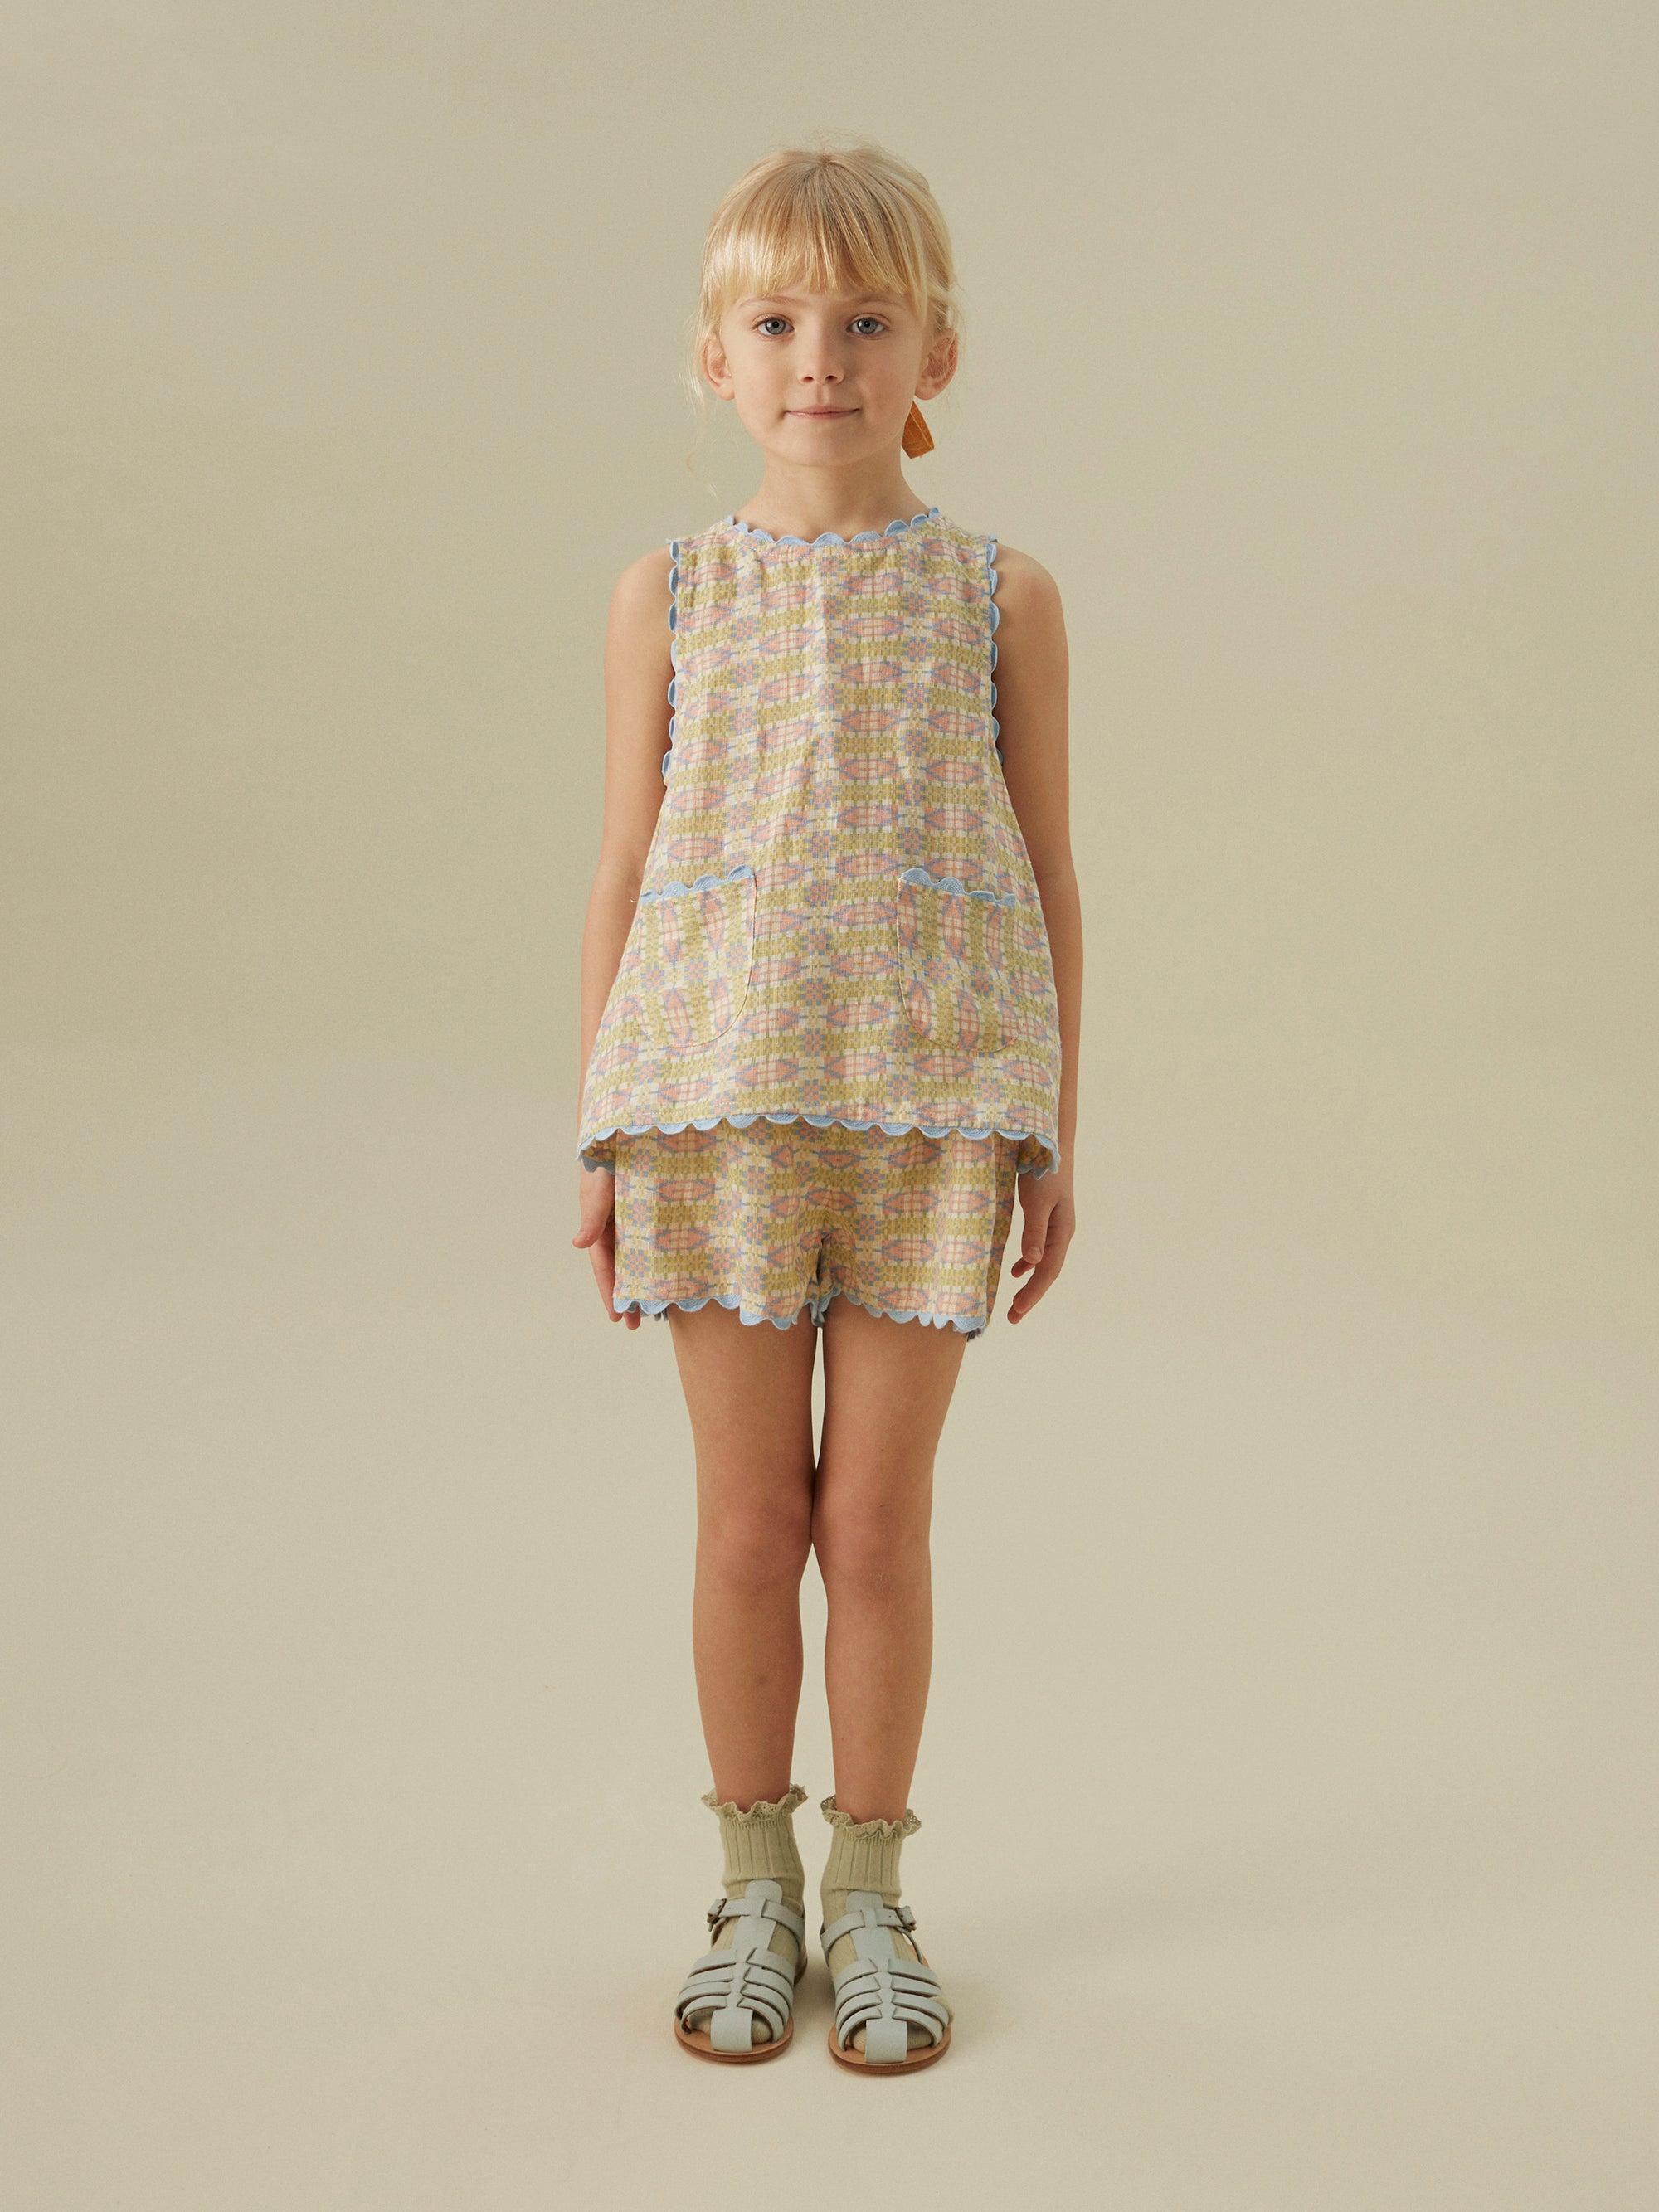 Apolina Juni Kid's Set Top & Shorts Solva Linen | BIEN BIEN bienbienshop.com